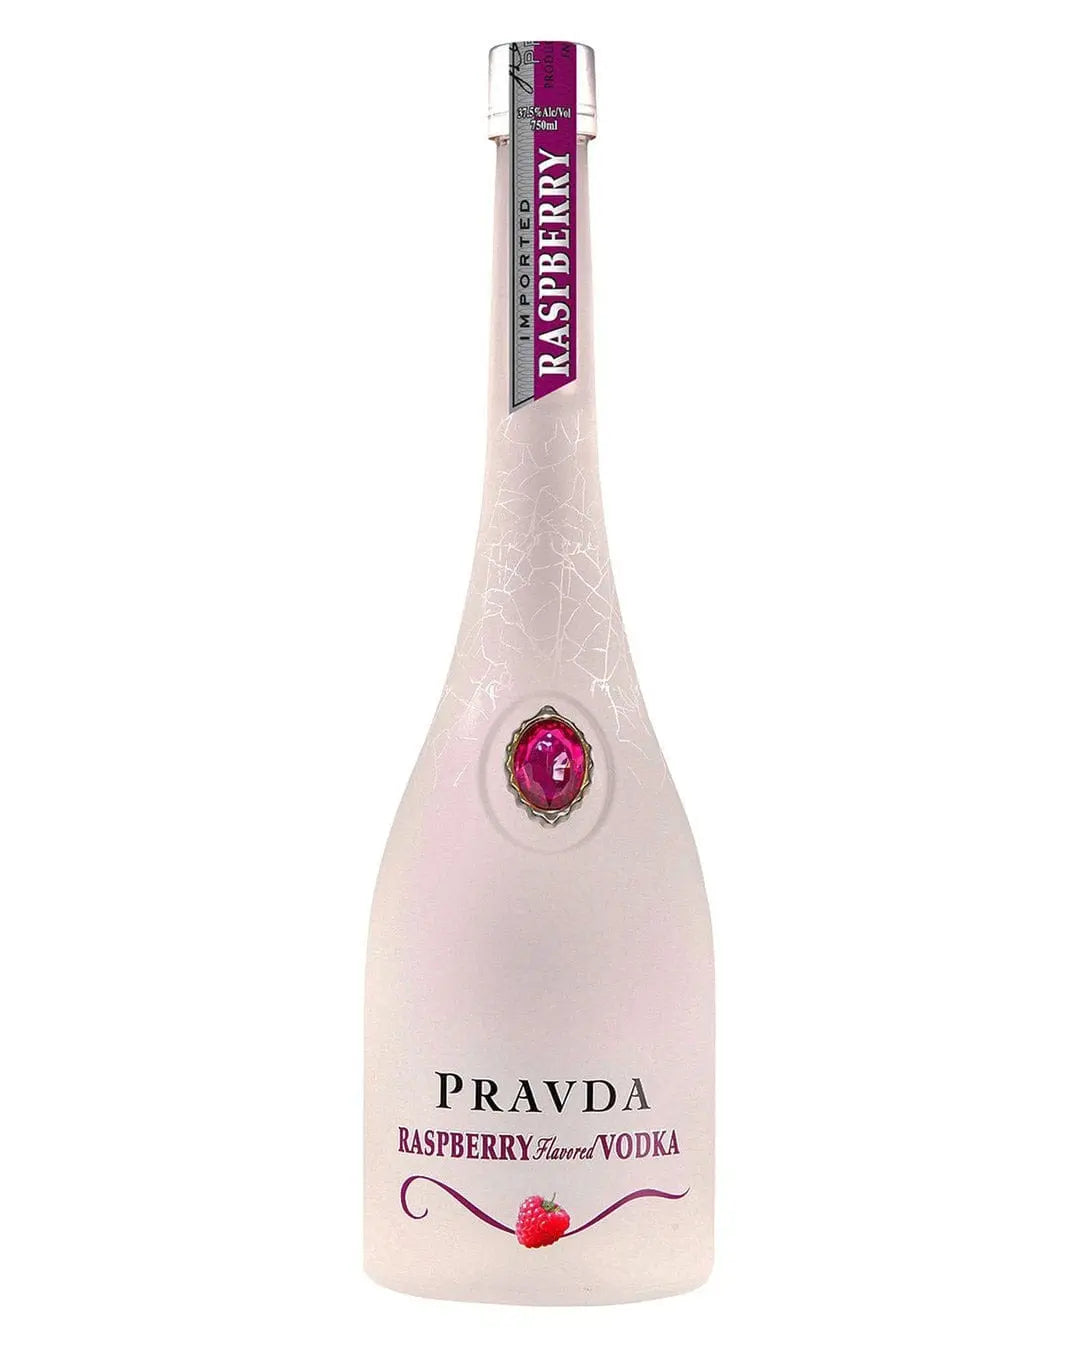 Pravda Ultra Premium Polish Raspberry Vodka, 70 cl Vodka 5901811521065